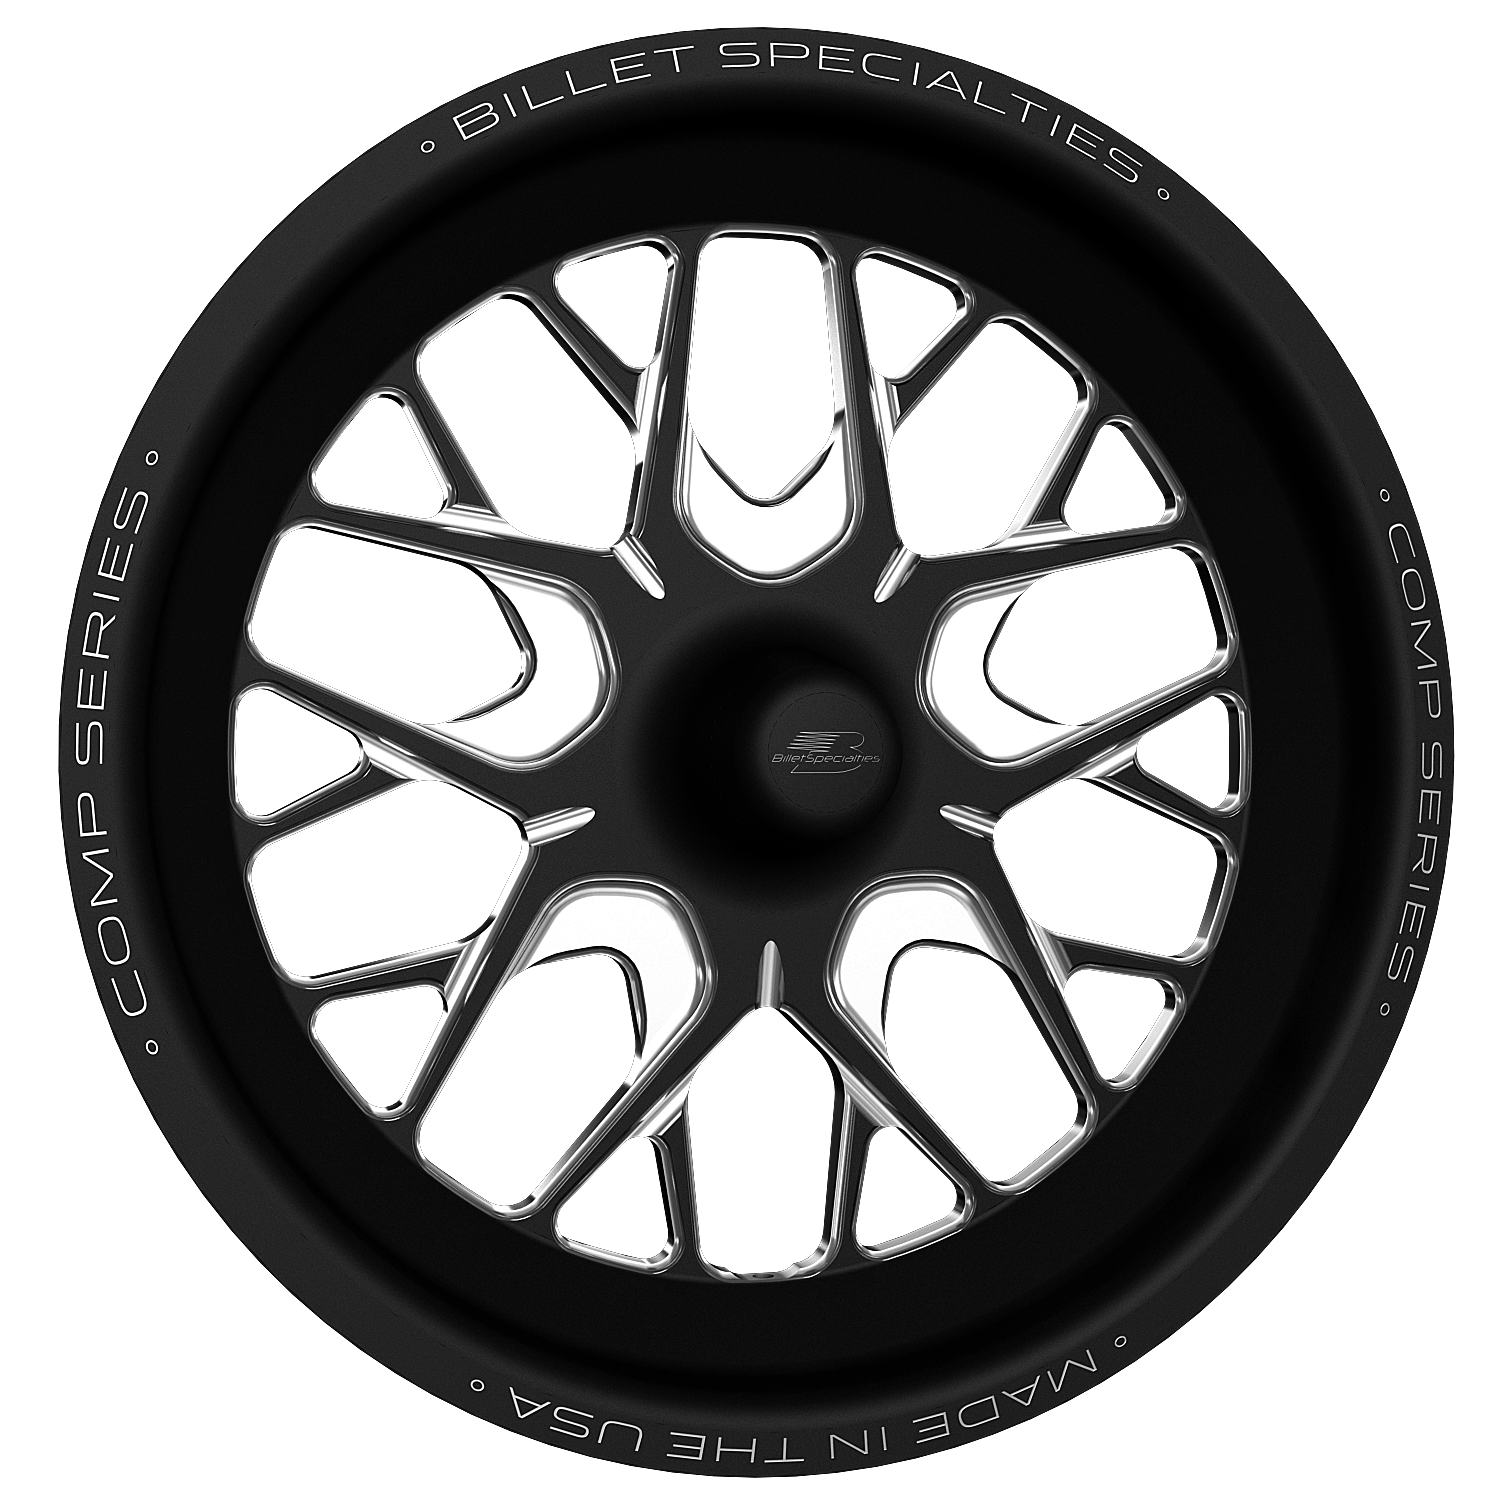 COMP 8 Wheel, Size: 17" x 3.50", Bolt Pattern: Strange GT Spindle-Mount [Black Finish]